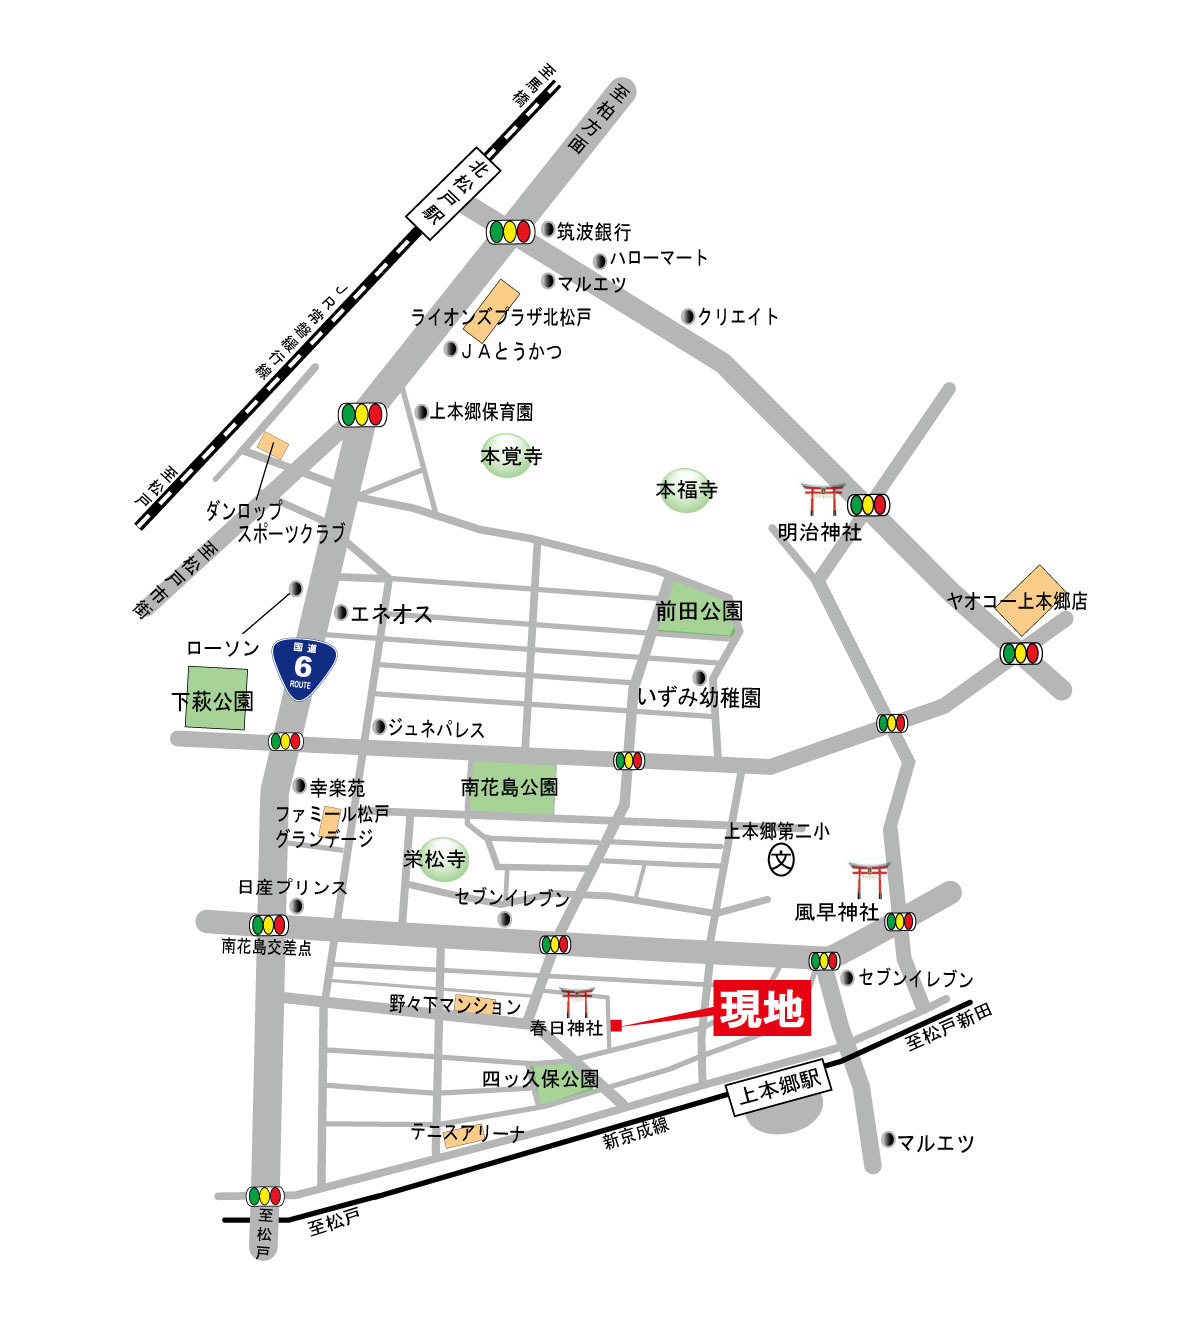 新京成線「上本郷」駅より徒歩4分。
JR常磐線「松戸」駅・「北松戸」駅も徒歩圏内で、
３駅利用可能な便利な立地環境です。
